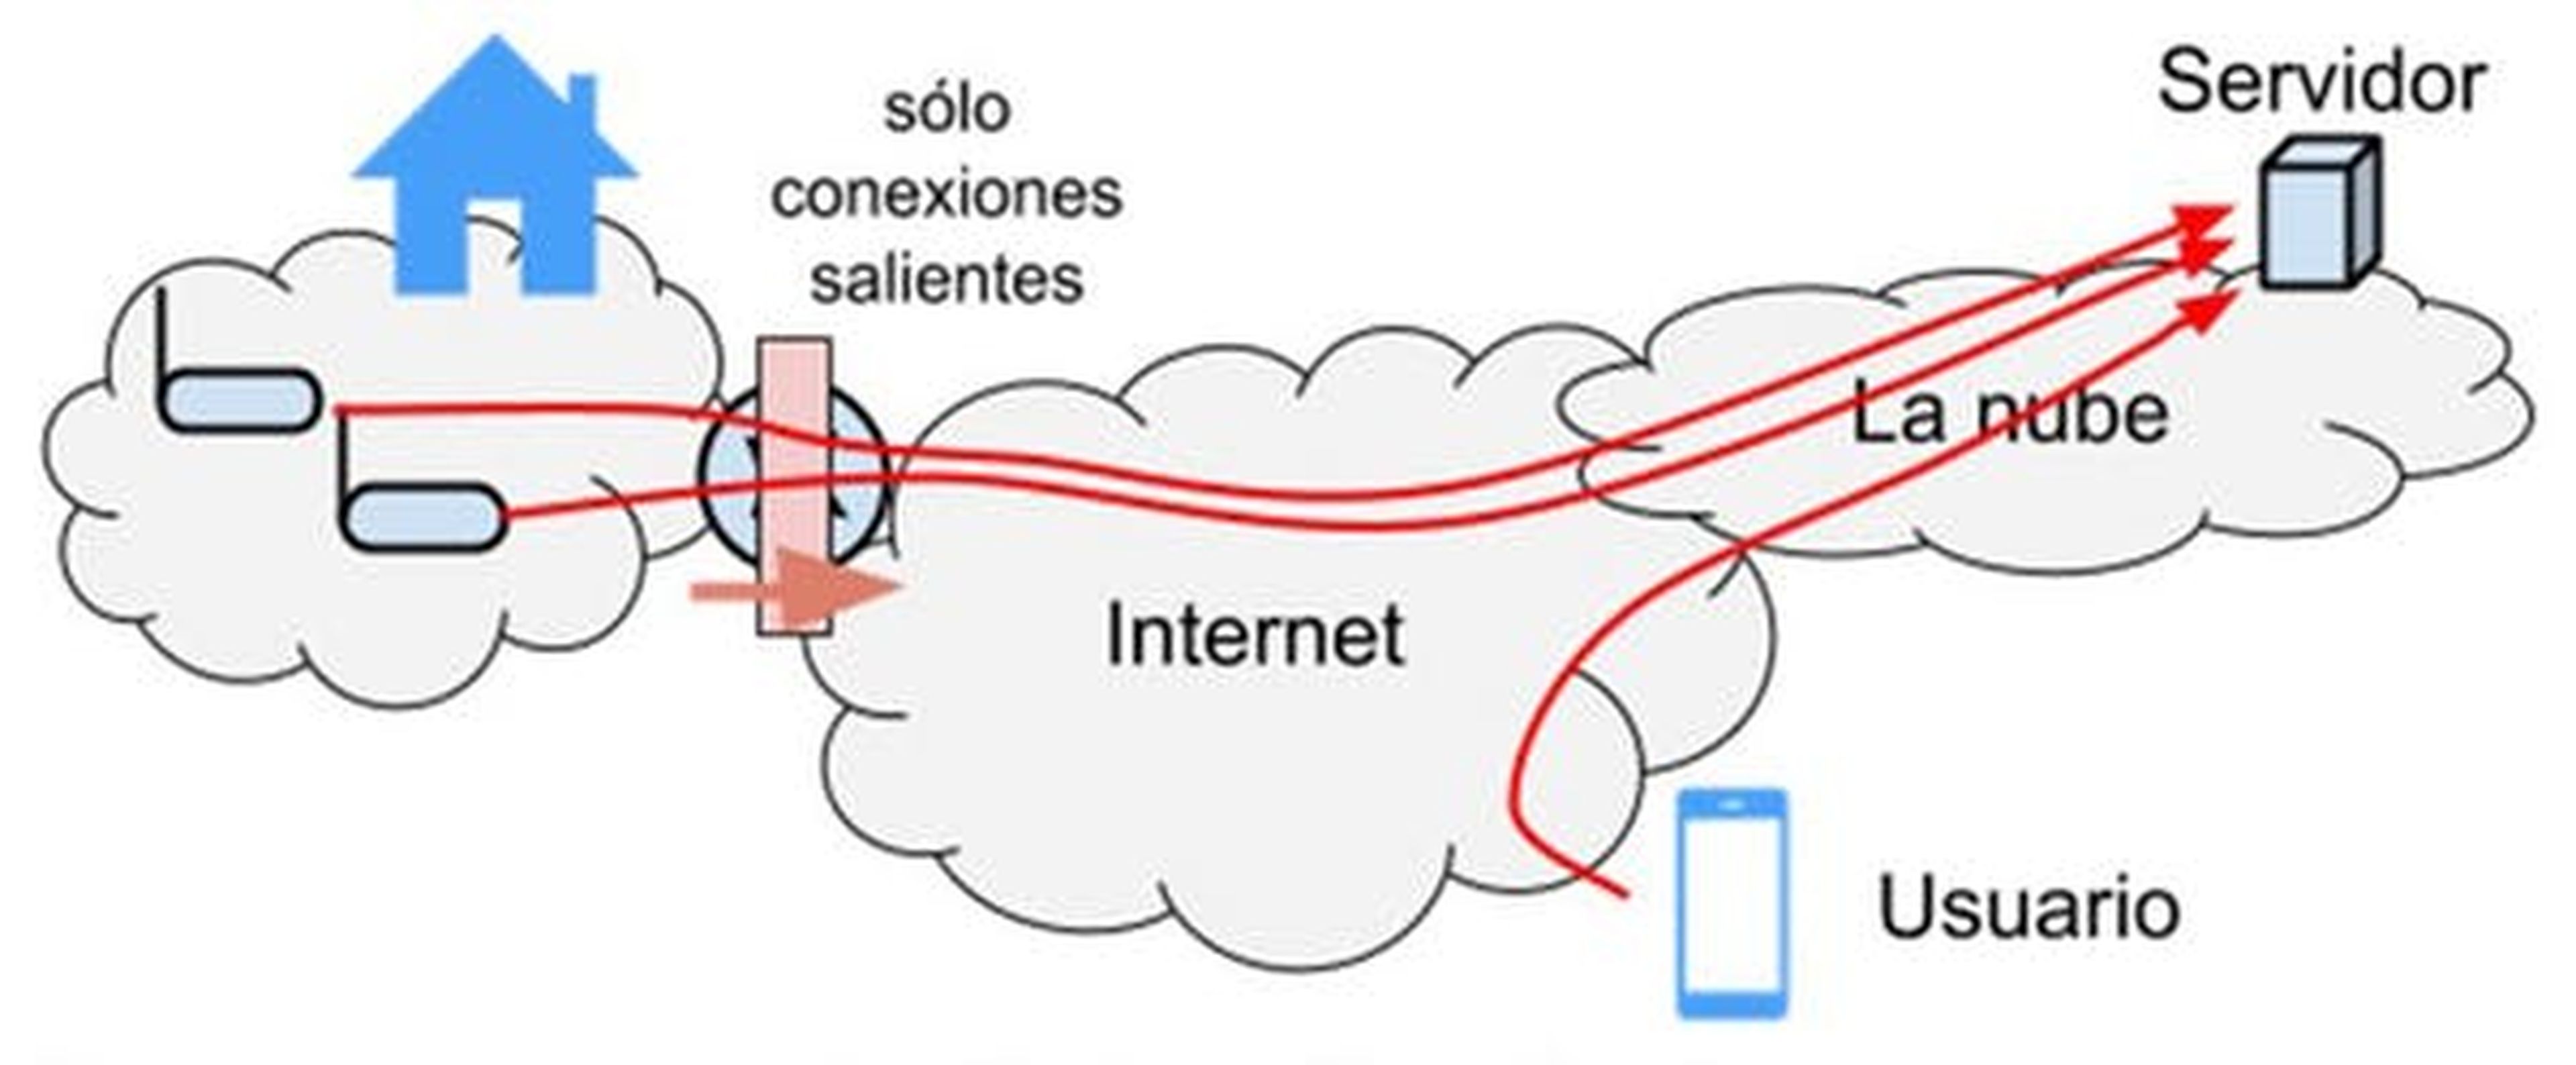 Diagrama de comunicación vía servidor en la nube.